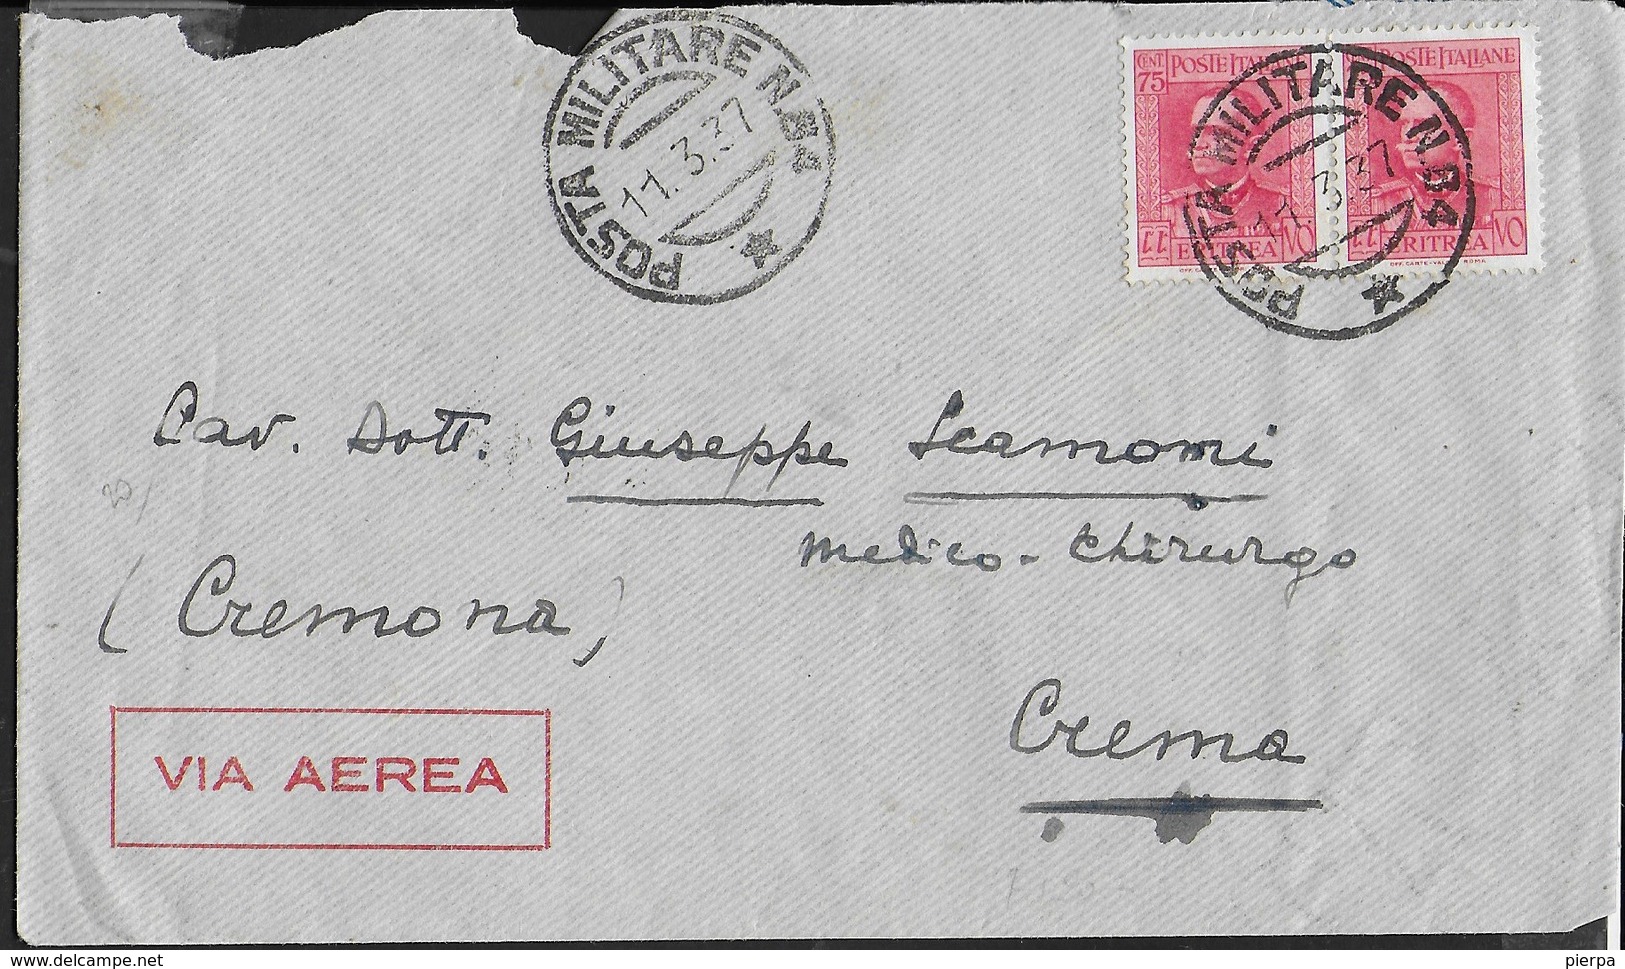 ETIOPIA - POSTA MILITARE N.84 (1- P4) SU BUSTA VIA AEREA 11.03.1937 PER CREMA - Ethiopia